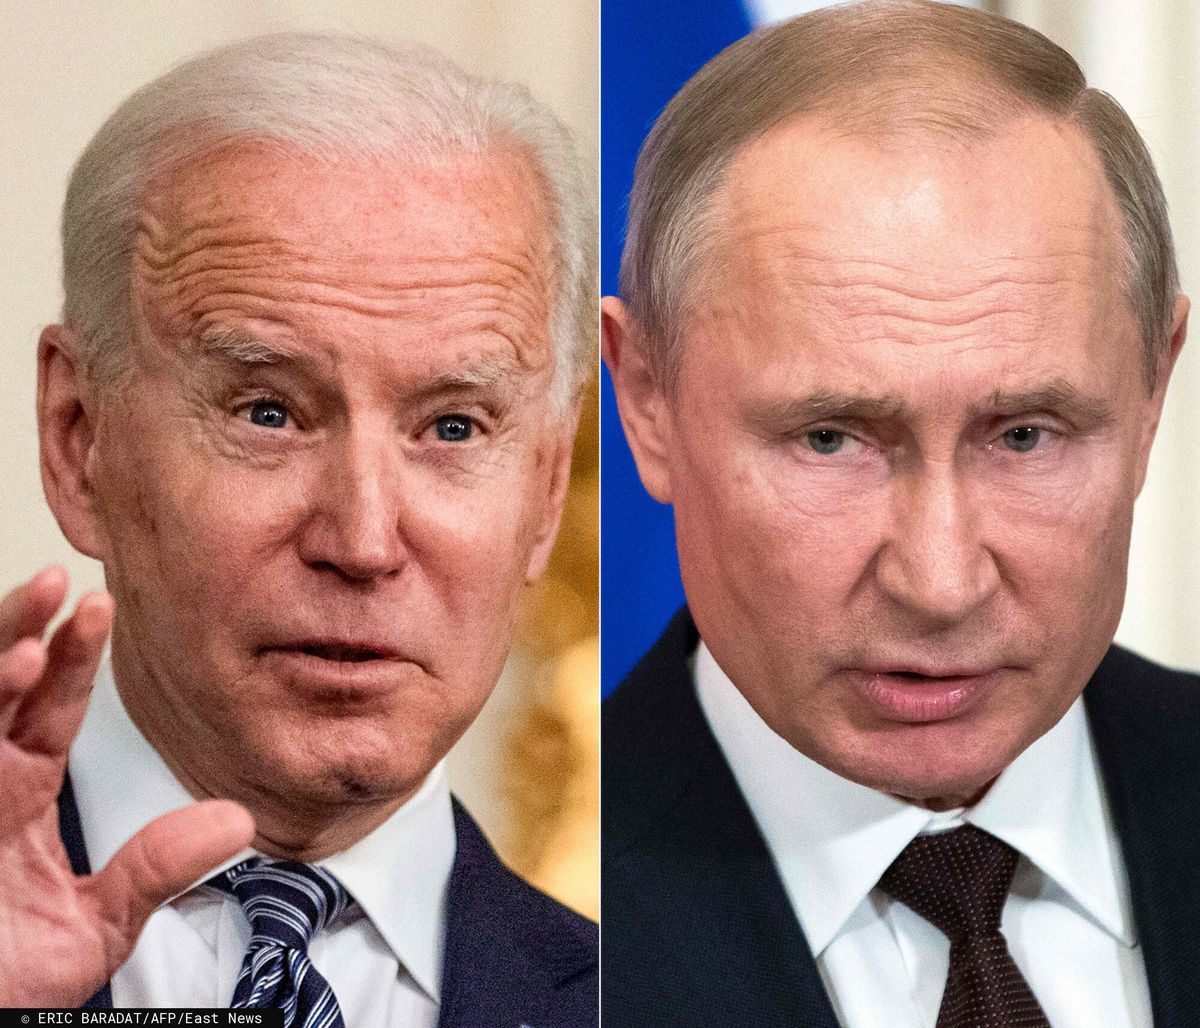 Joe Biden i Władimir Putin (Photo by Eric BARADAT and Pavel Golovkin / various sources / AFP)